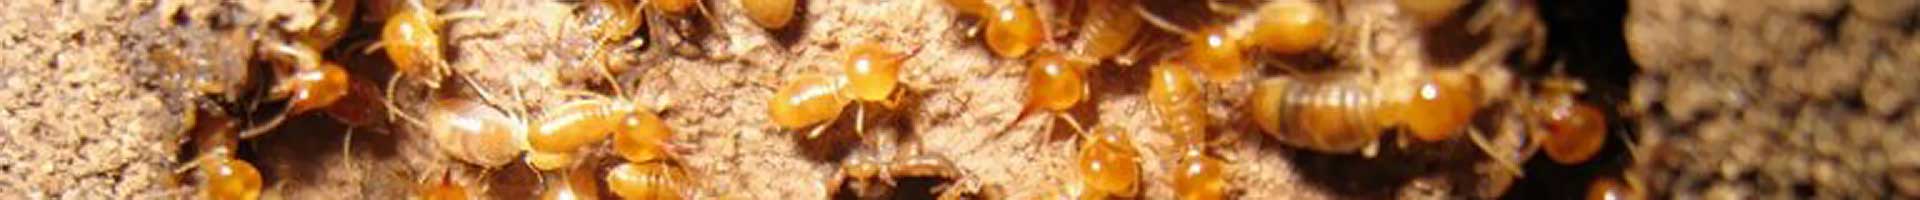 termite damage repair options sunshine coast